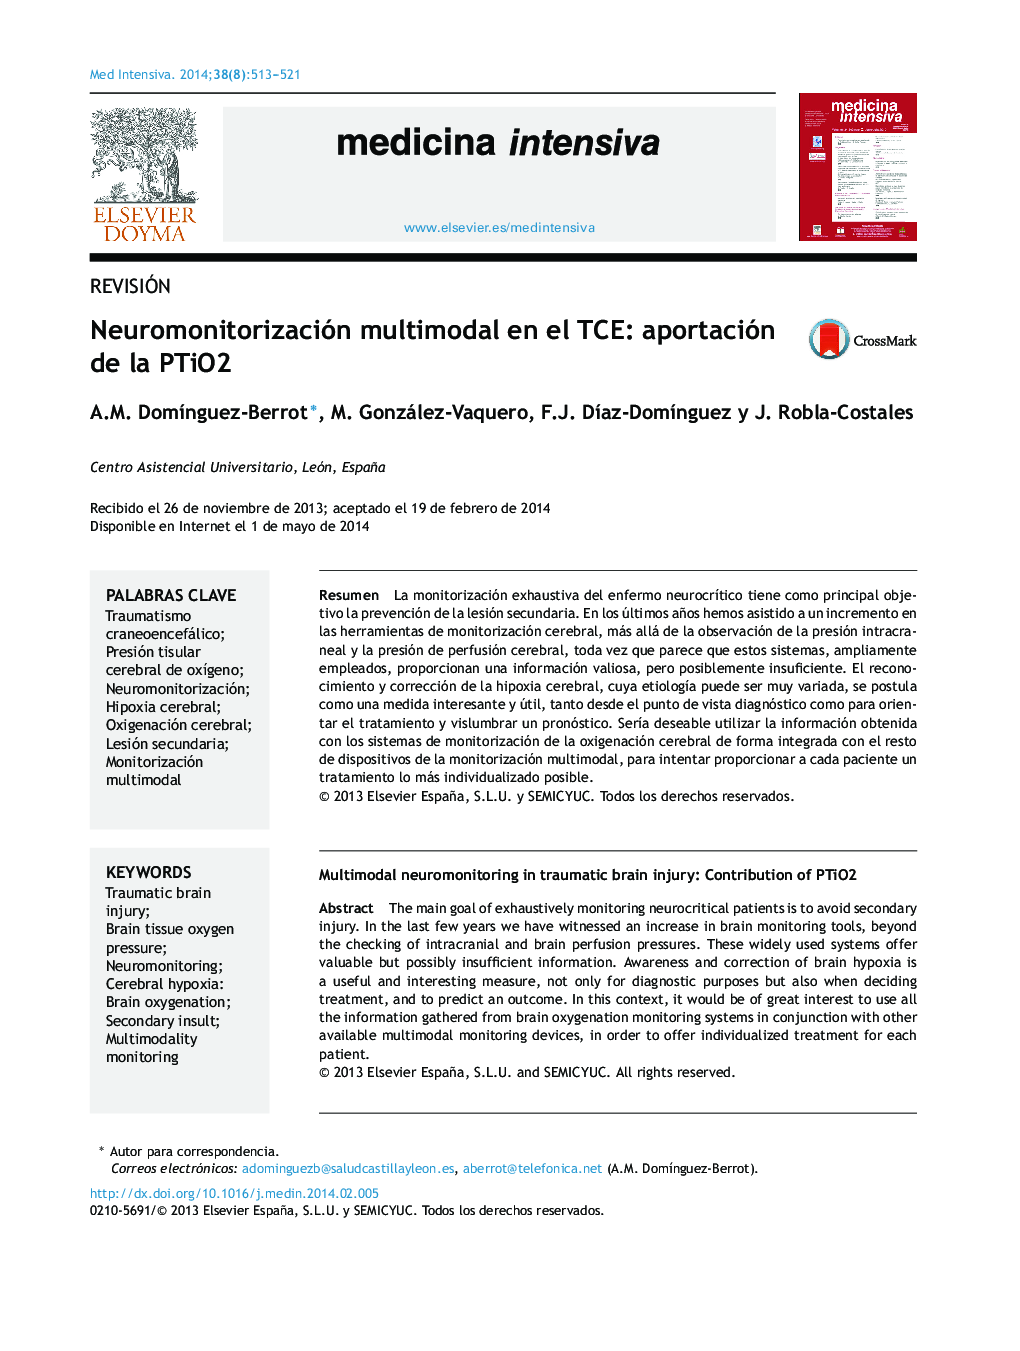 Neuromonitorización multimodal en el TCE: aportación de la PTiO2